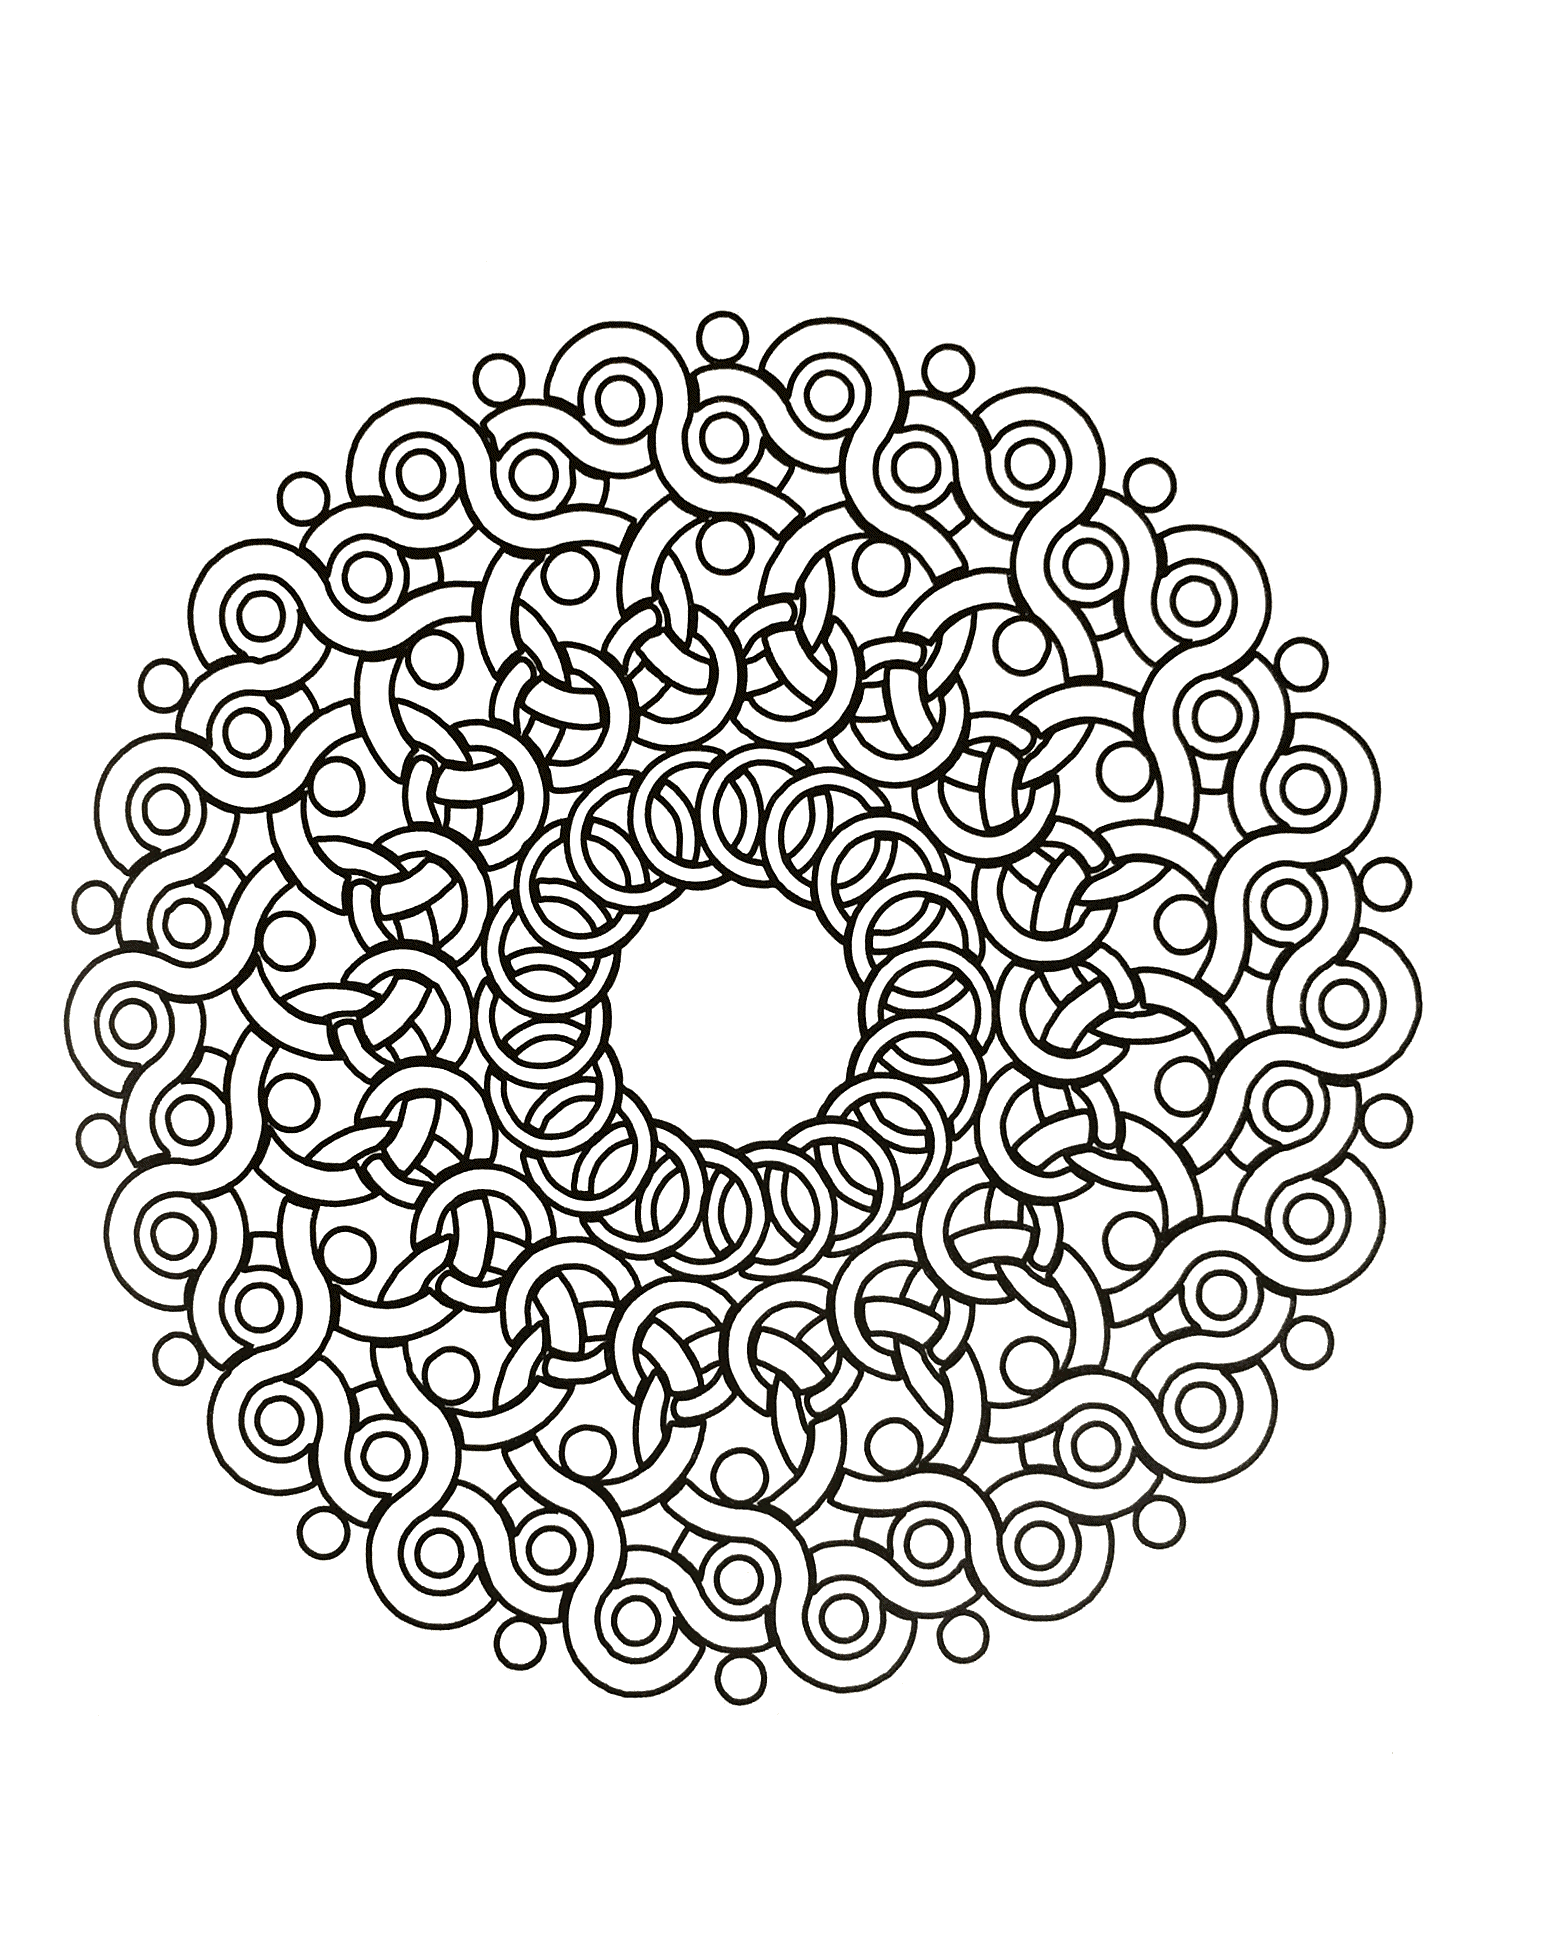 Un Mandala aux formes rappelant des ronces pour les pros ! Des dizaines et des dizaines de petites zones qui n'attendent que quelques couleurs choisies avec goût.